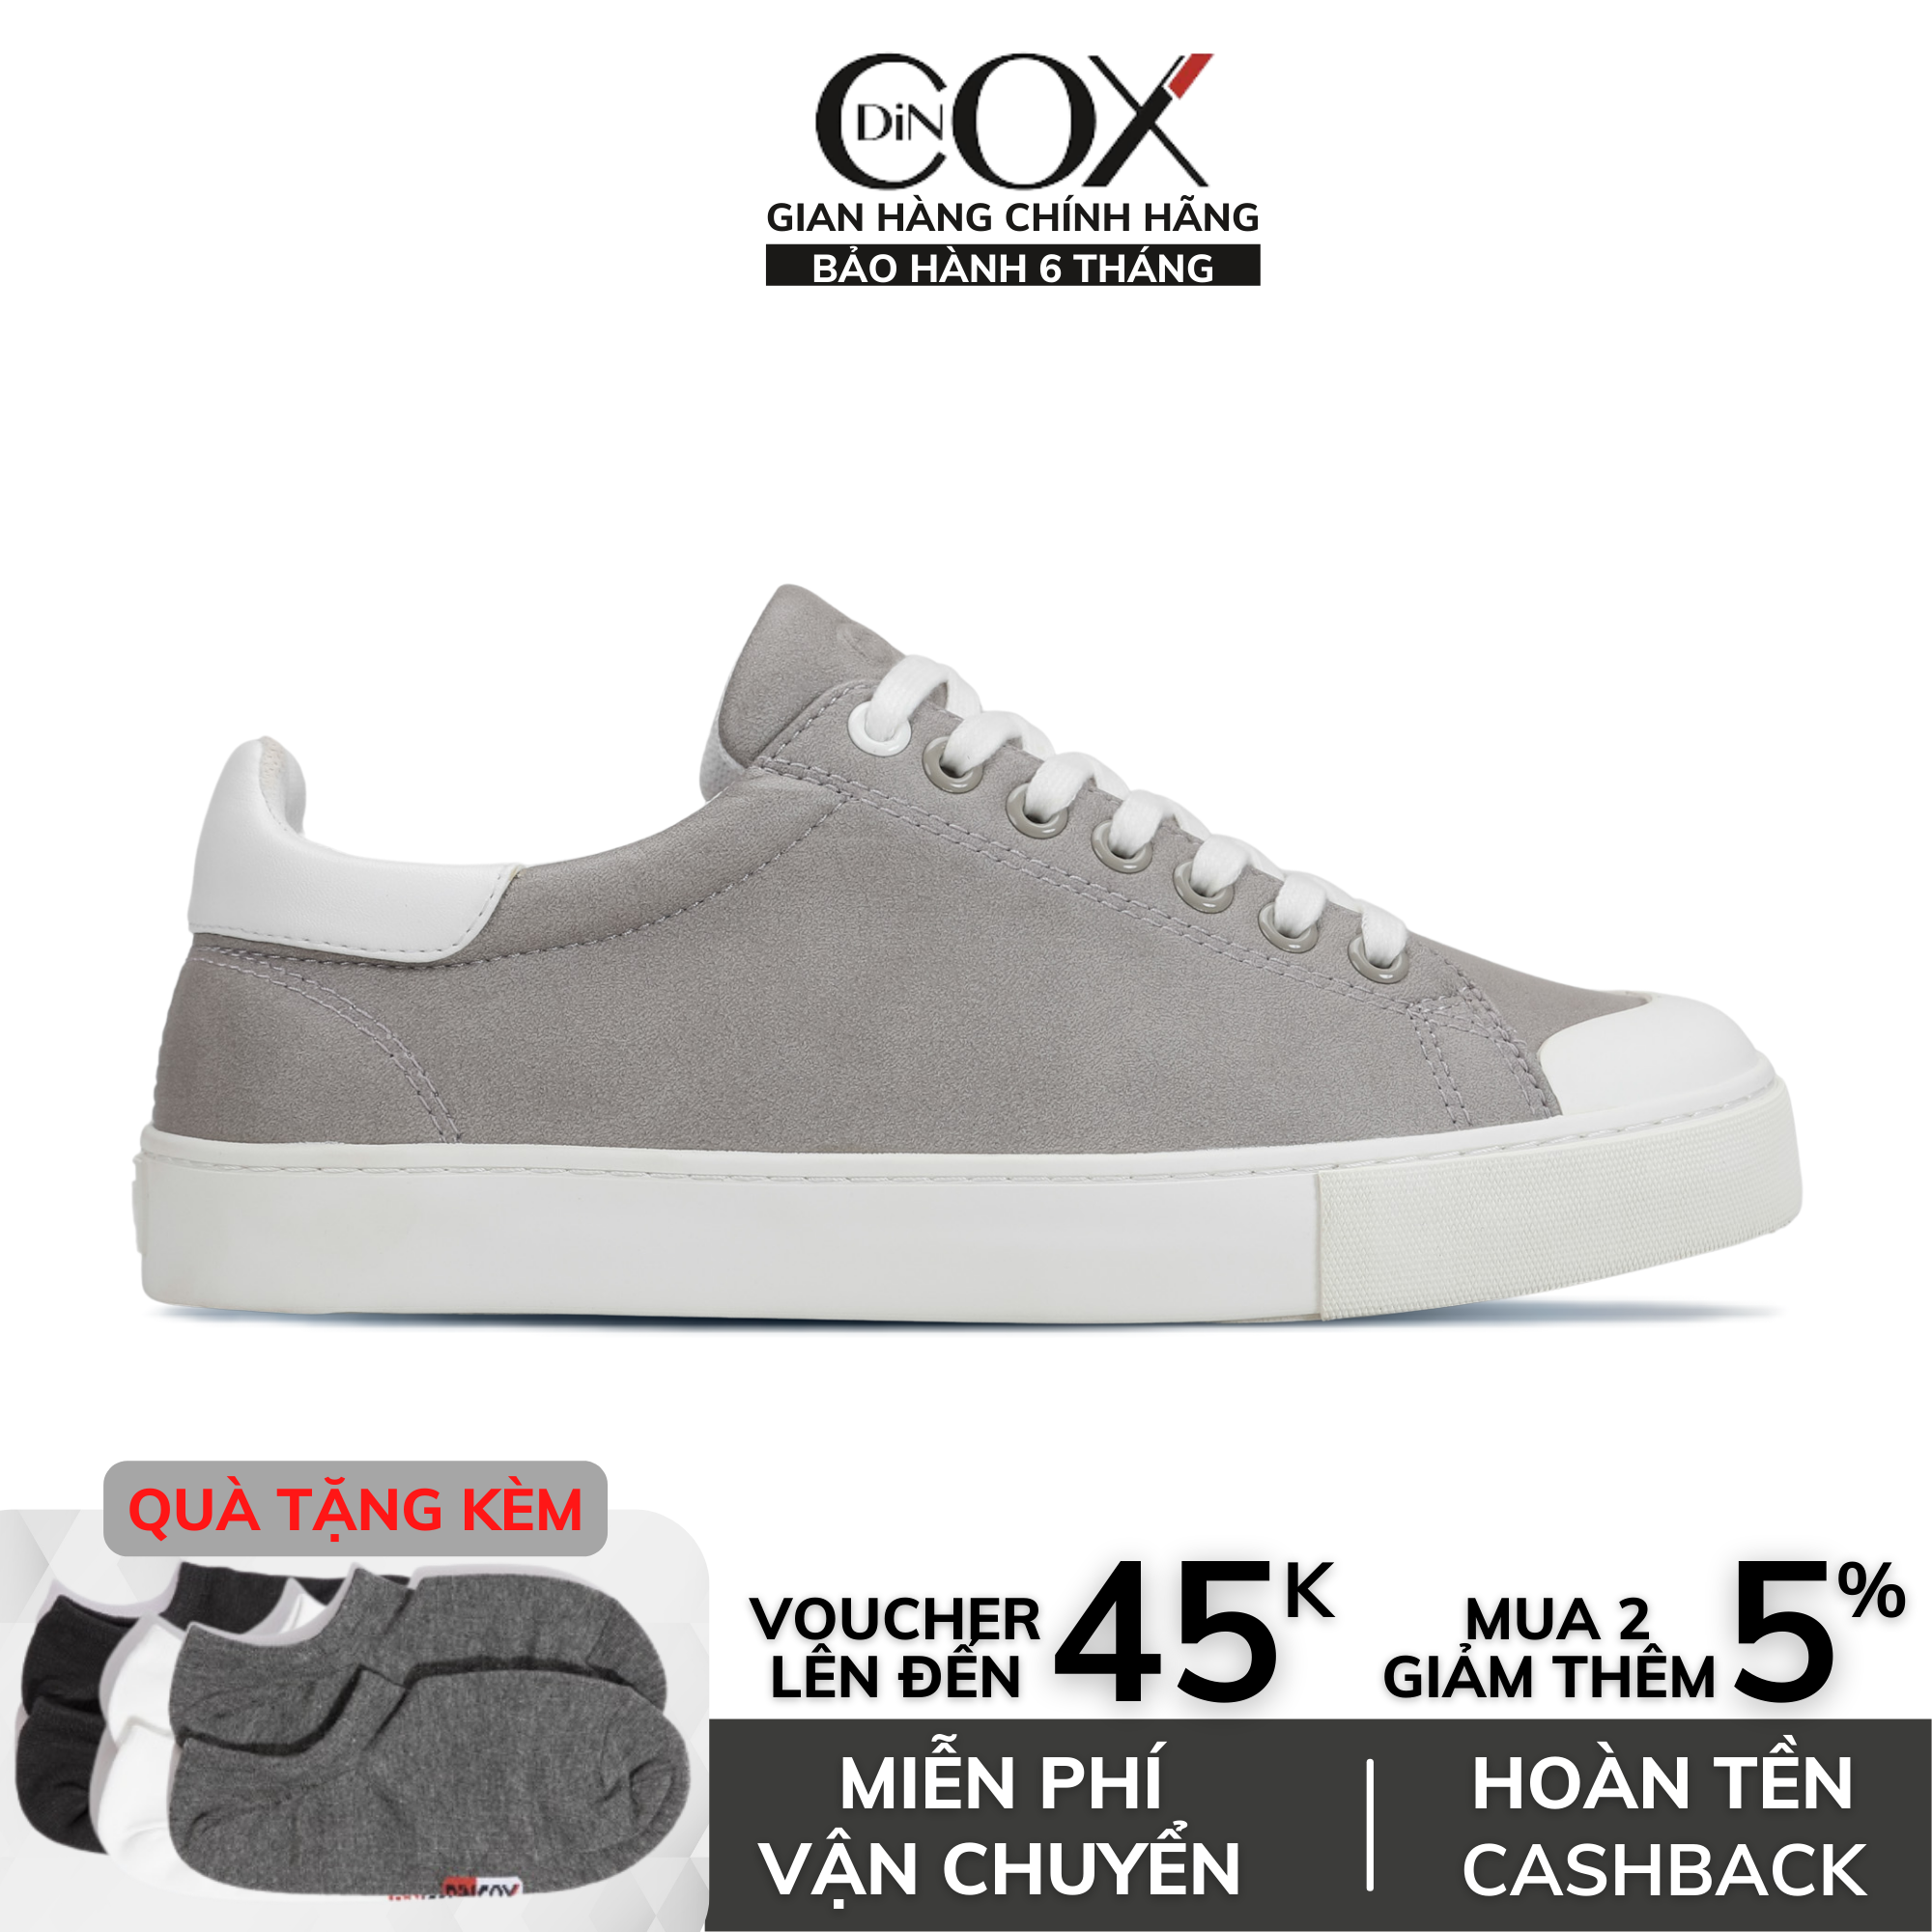 Giày thể thao Nam chính hãng Dincox Shoes - C13 Grey, Giày thể thao đế bằng